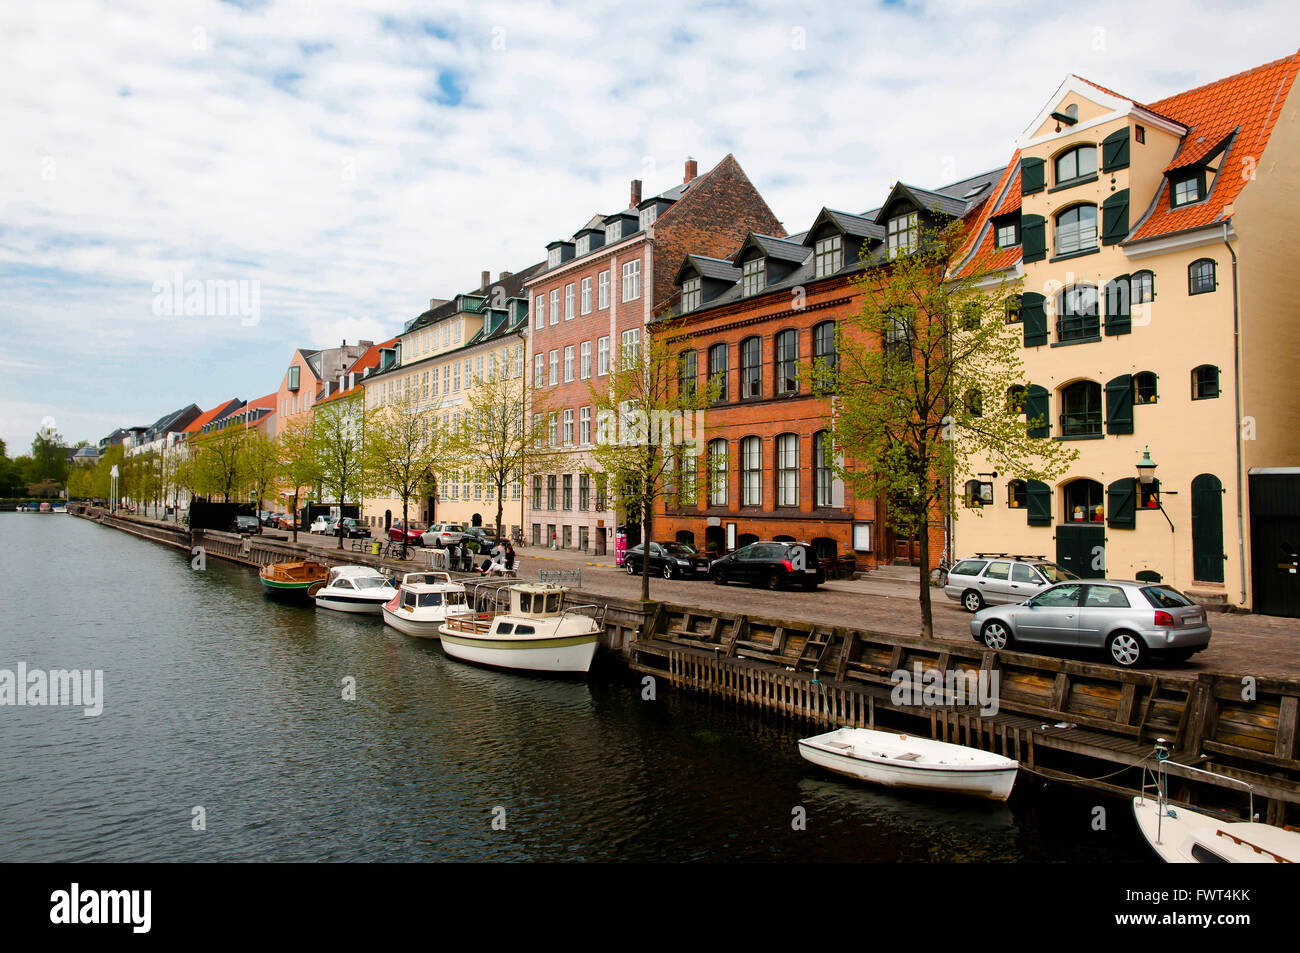 Christianshavn Canal - Copenhagen - Denmark Stock Photo